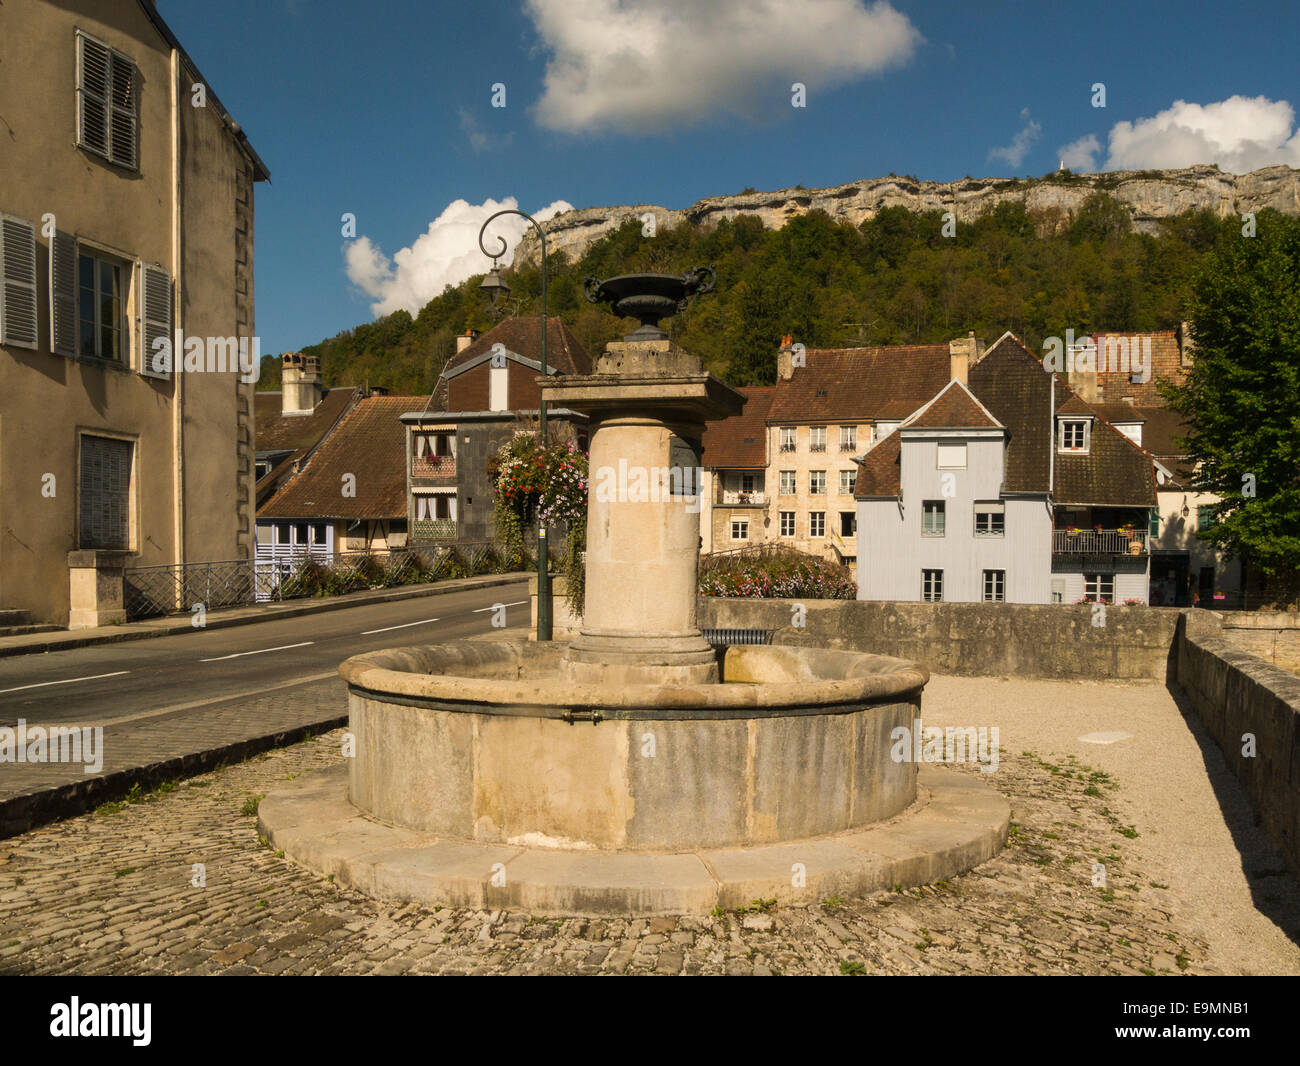 Wasser-Brunnen im Zentrum attraktiver und historischen Dorf Ornans Daub Department Franche-Compte Region Ost Frankreich EU Stockfoto